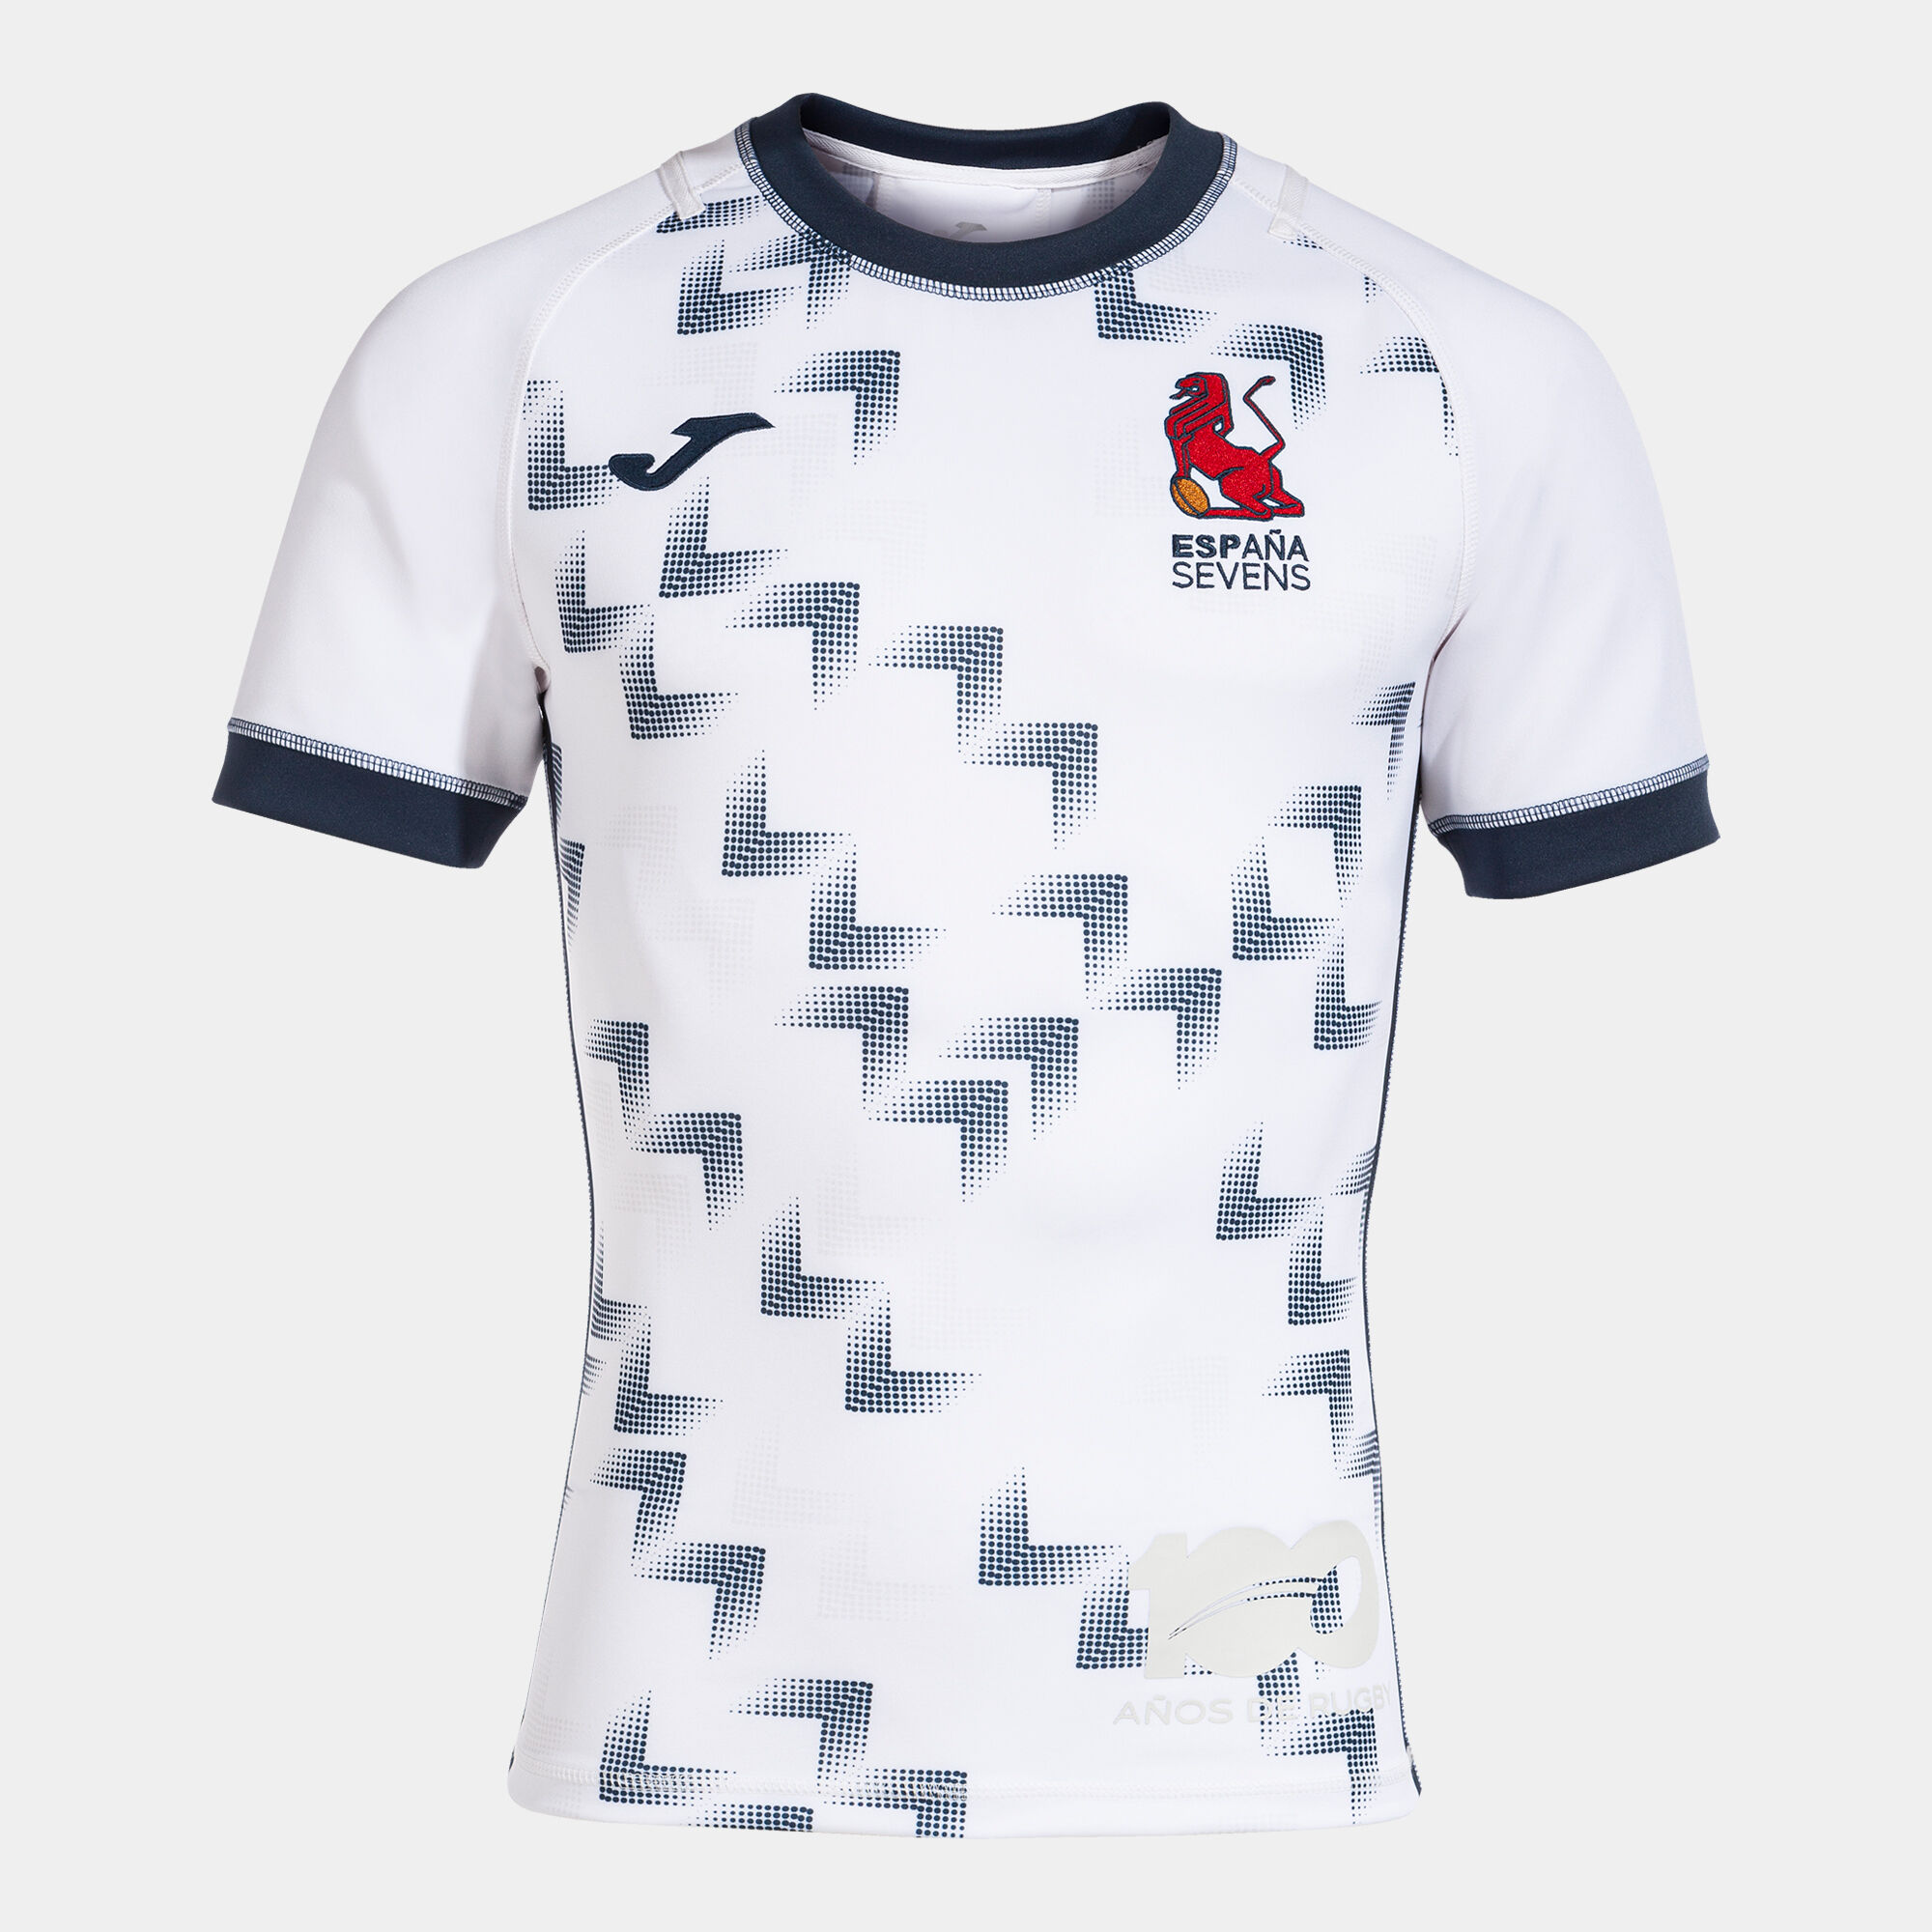 Camiseta selección española rugby XV hombre primera equipación